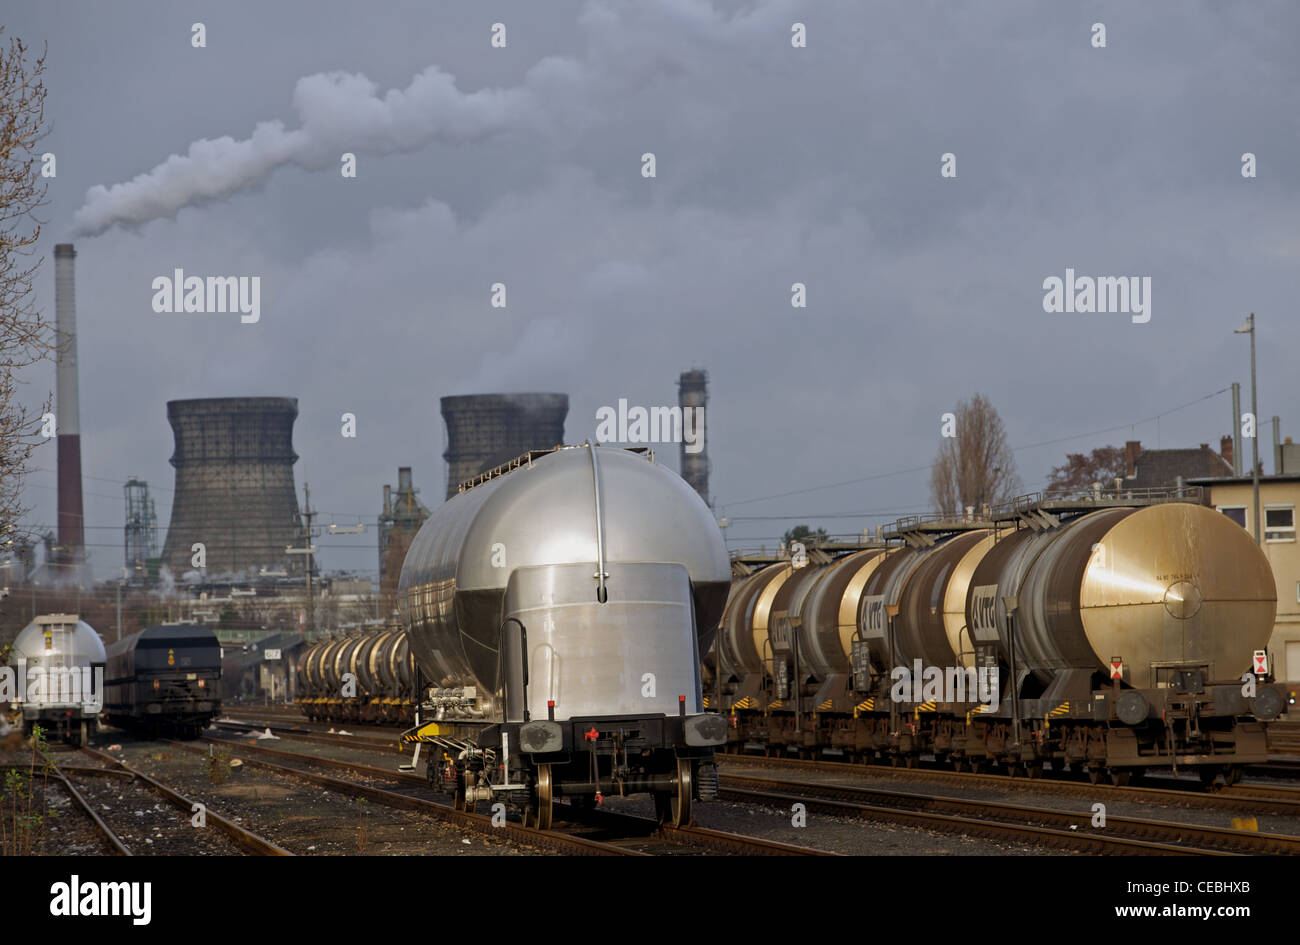 Gare de triage ferroviaire, Evonik usine chimique, Wesseling, Cologne, Allemagne. Banque D'Images